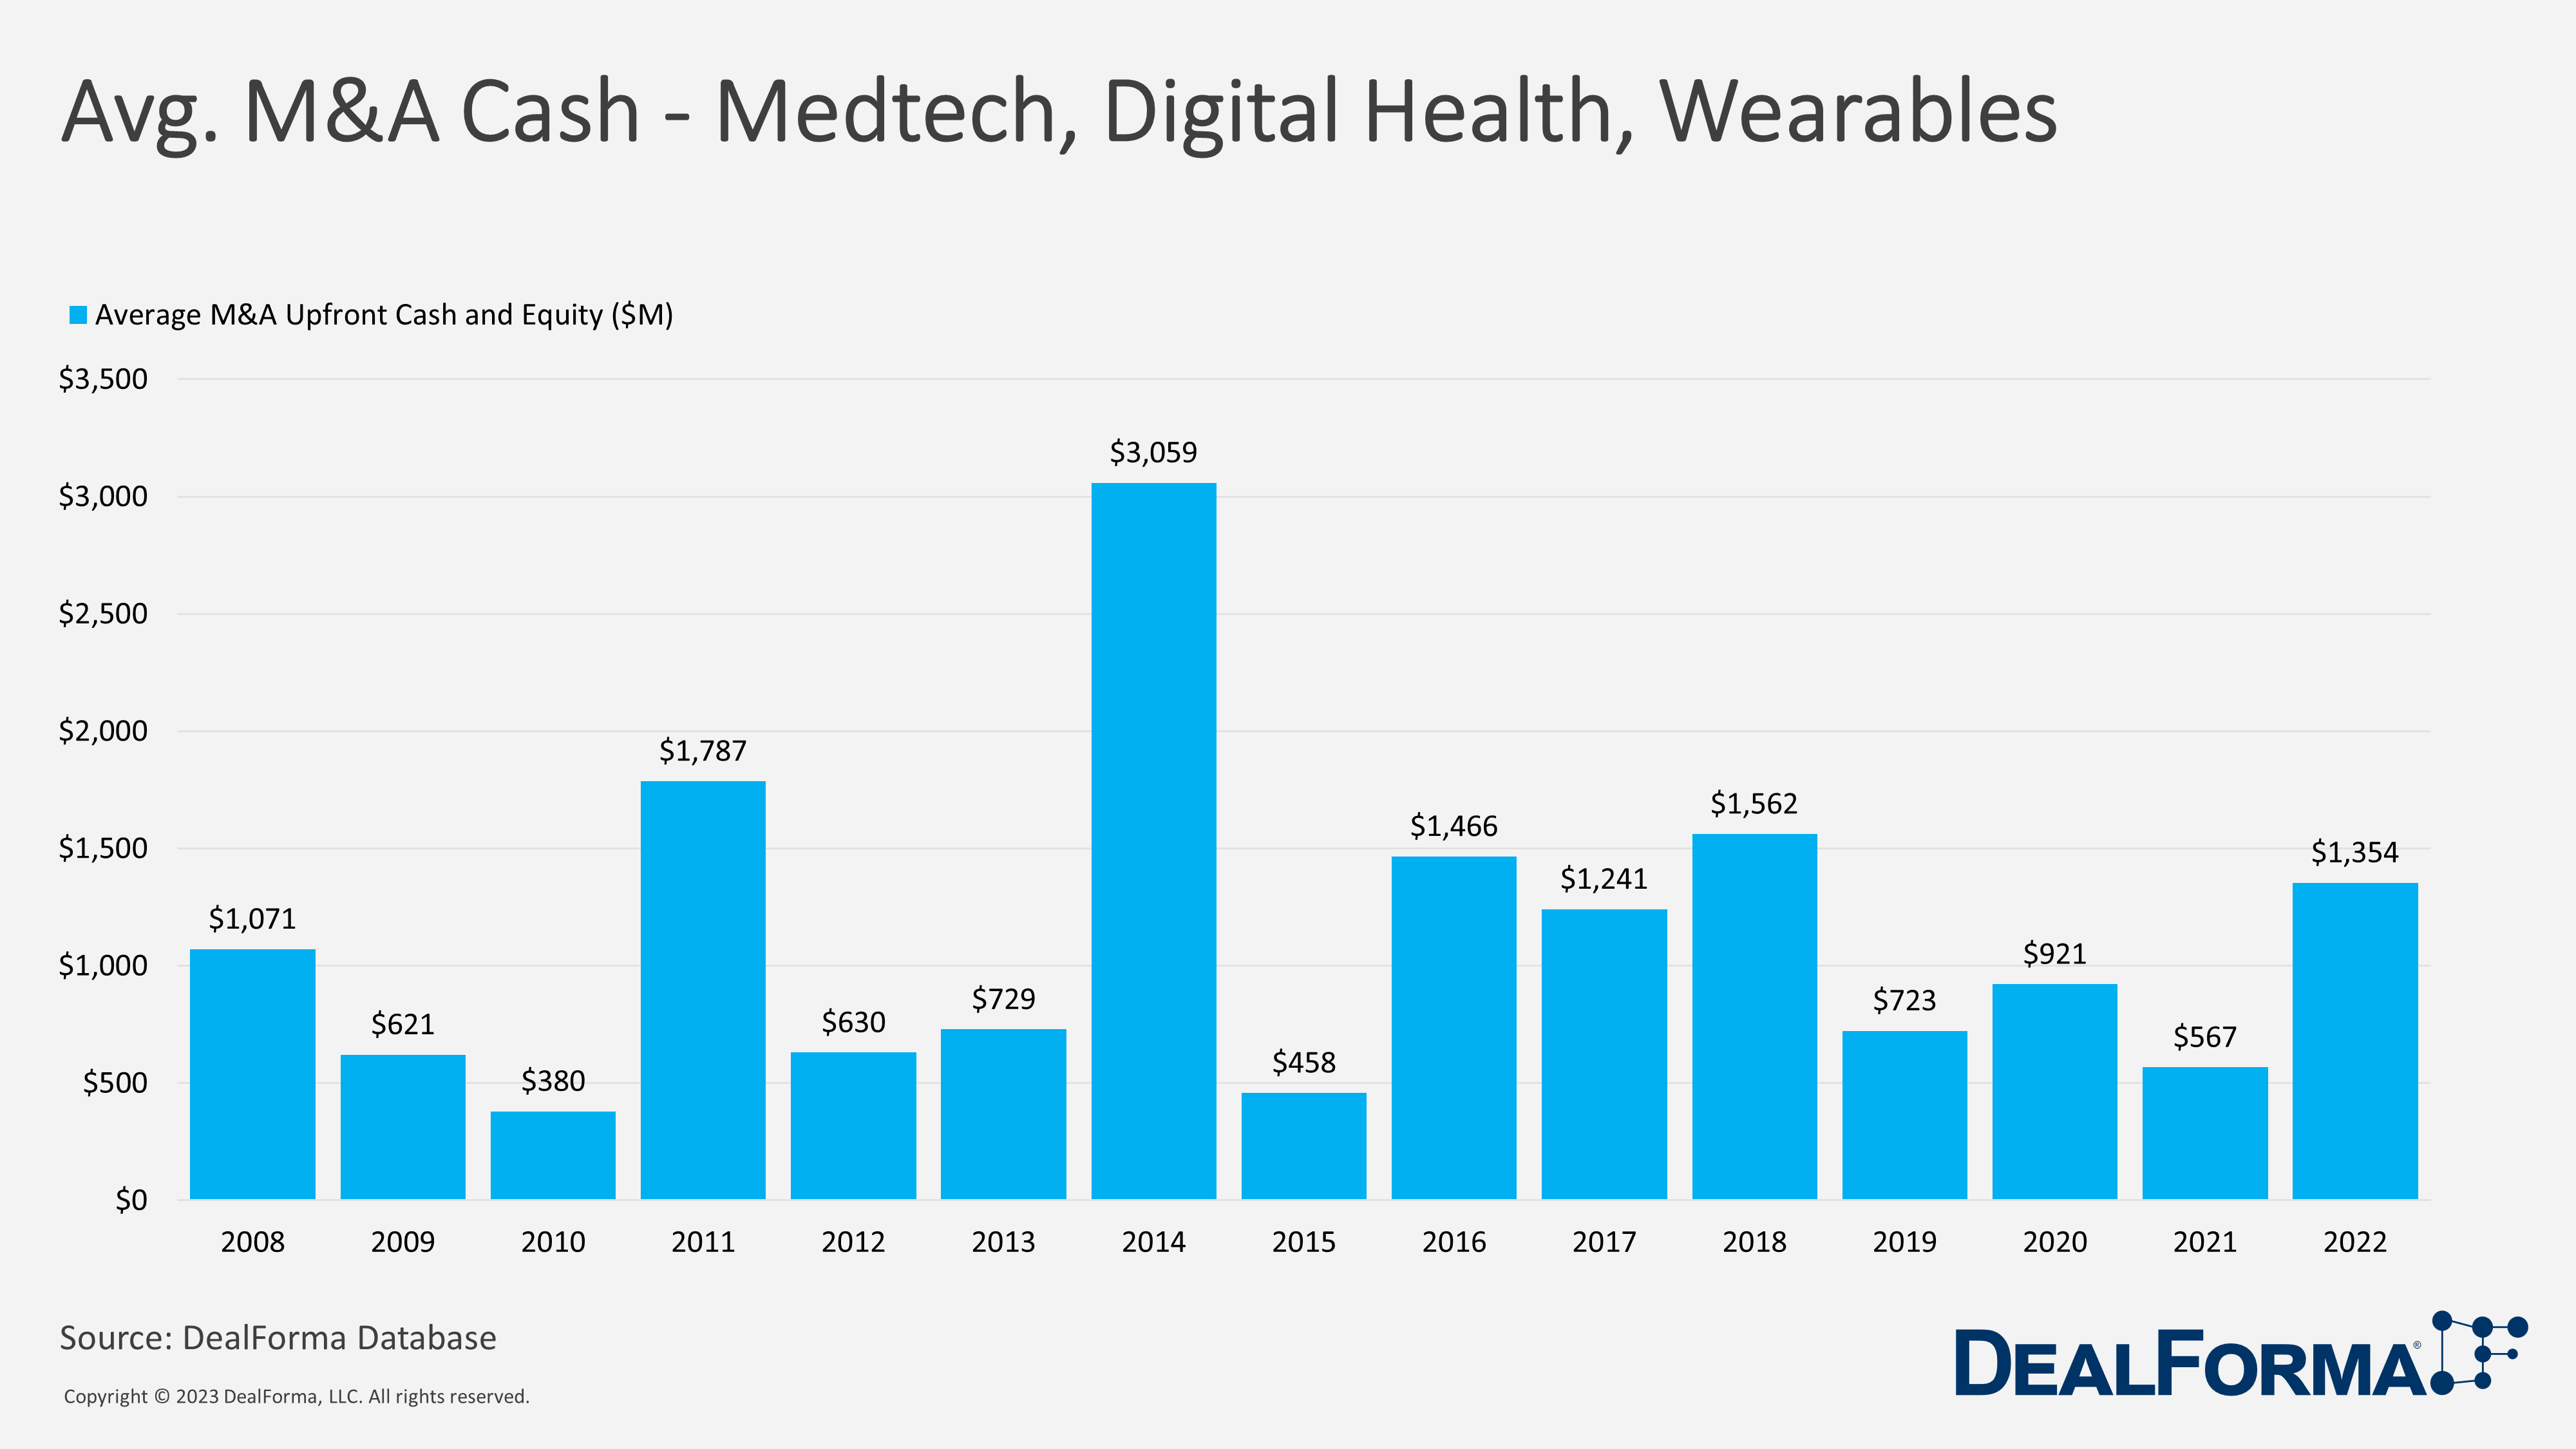 Avg. M&A Cash - Medtech, Digital Health, Wearables